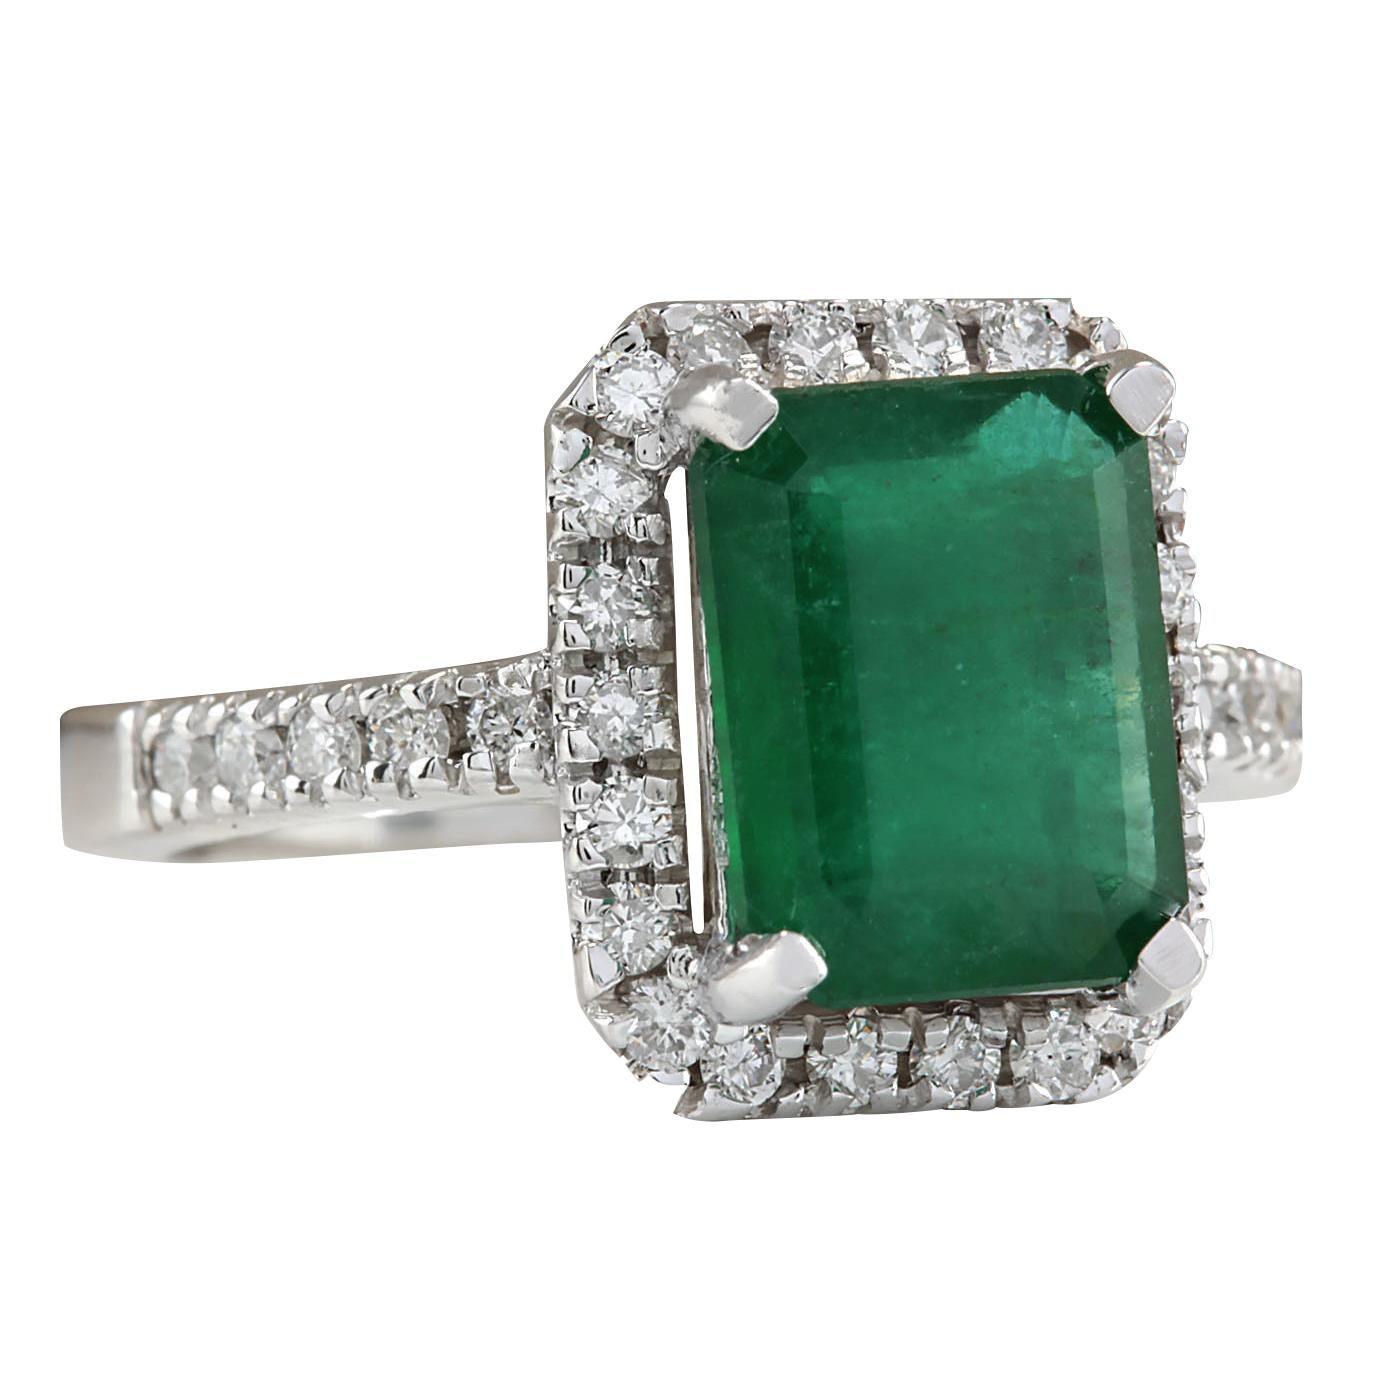 3.61 Carat Natural Emerald 14 Karat White Gold Diamond Ring
Stamped: 14K White Gold
Total Ring Weight: 6.5 Grams
Total Natural Emerald Weight is 3.01 Carat (Measures: 10.00x8.00 mm)
Color: Green
Total Natural Diamond Weight is 0.60 Carat
Color: F-G,